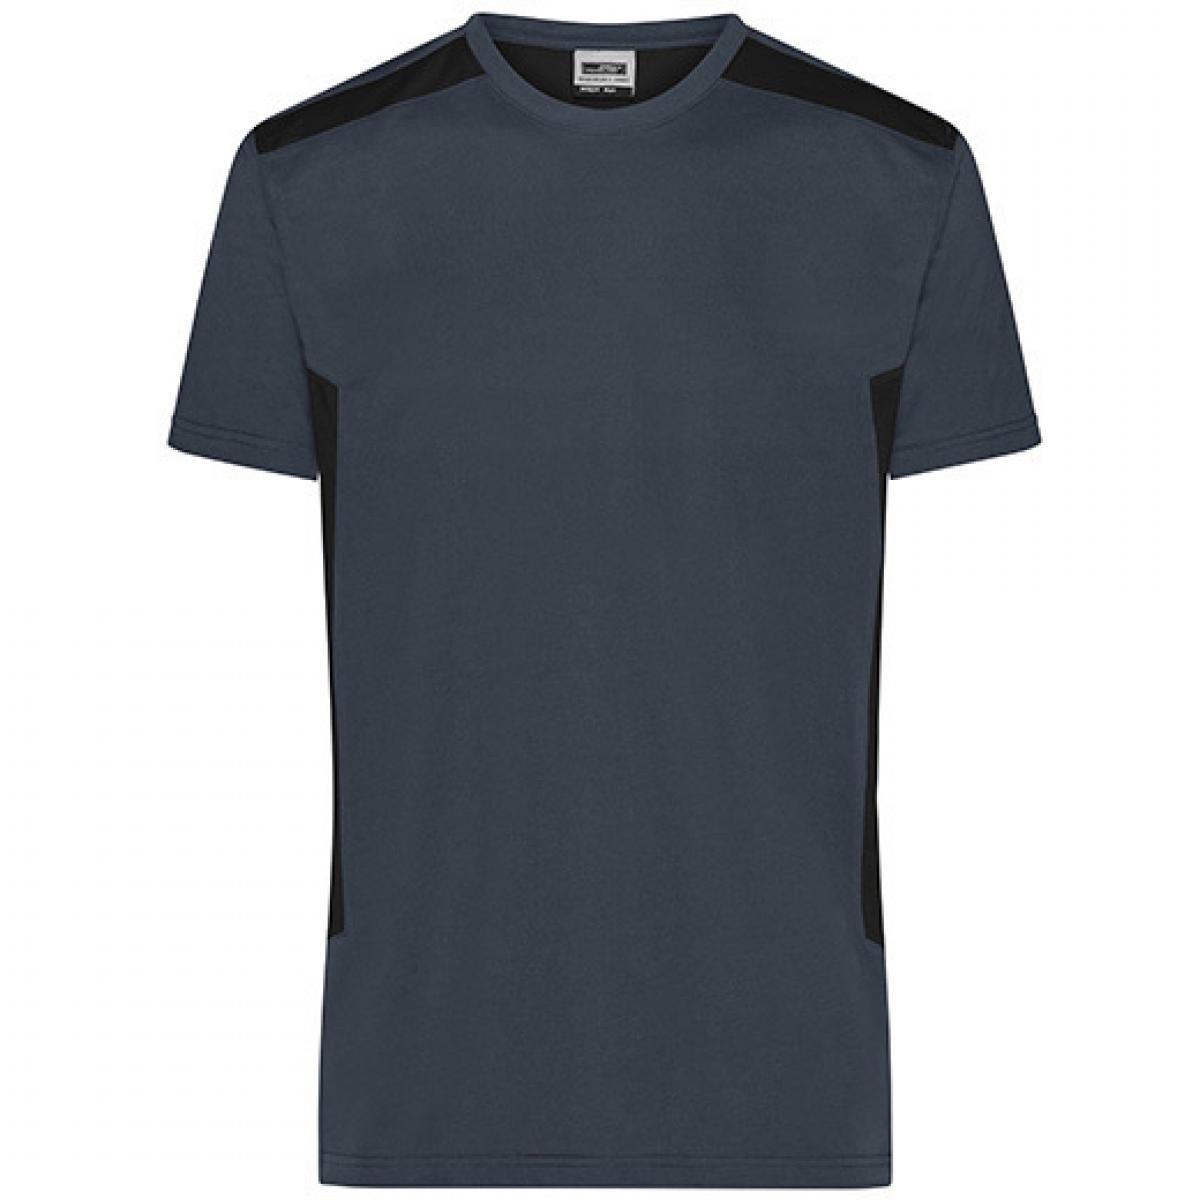 Hersteller: James+Nicholson Herstellernummer: JN1824 Artikelbezeichnung: Herren T, Men‘s Workwear T-Shirt -STRONG-Waschbar bis 60 °C Farbe: Carbon/Black